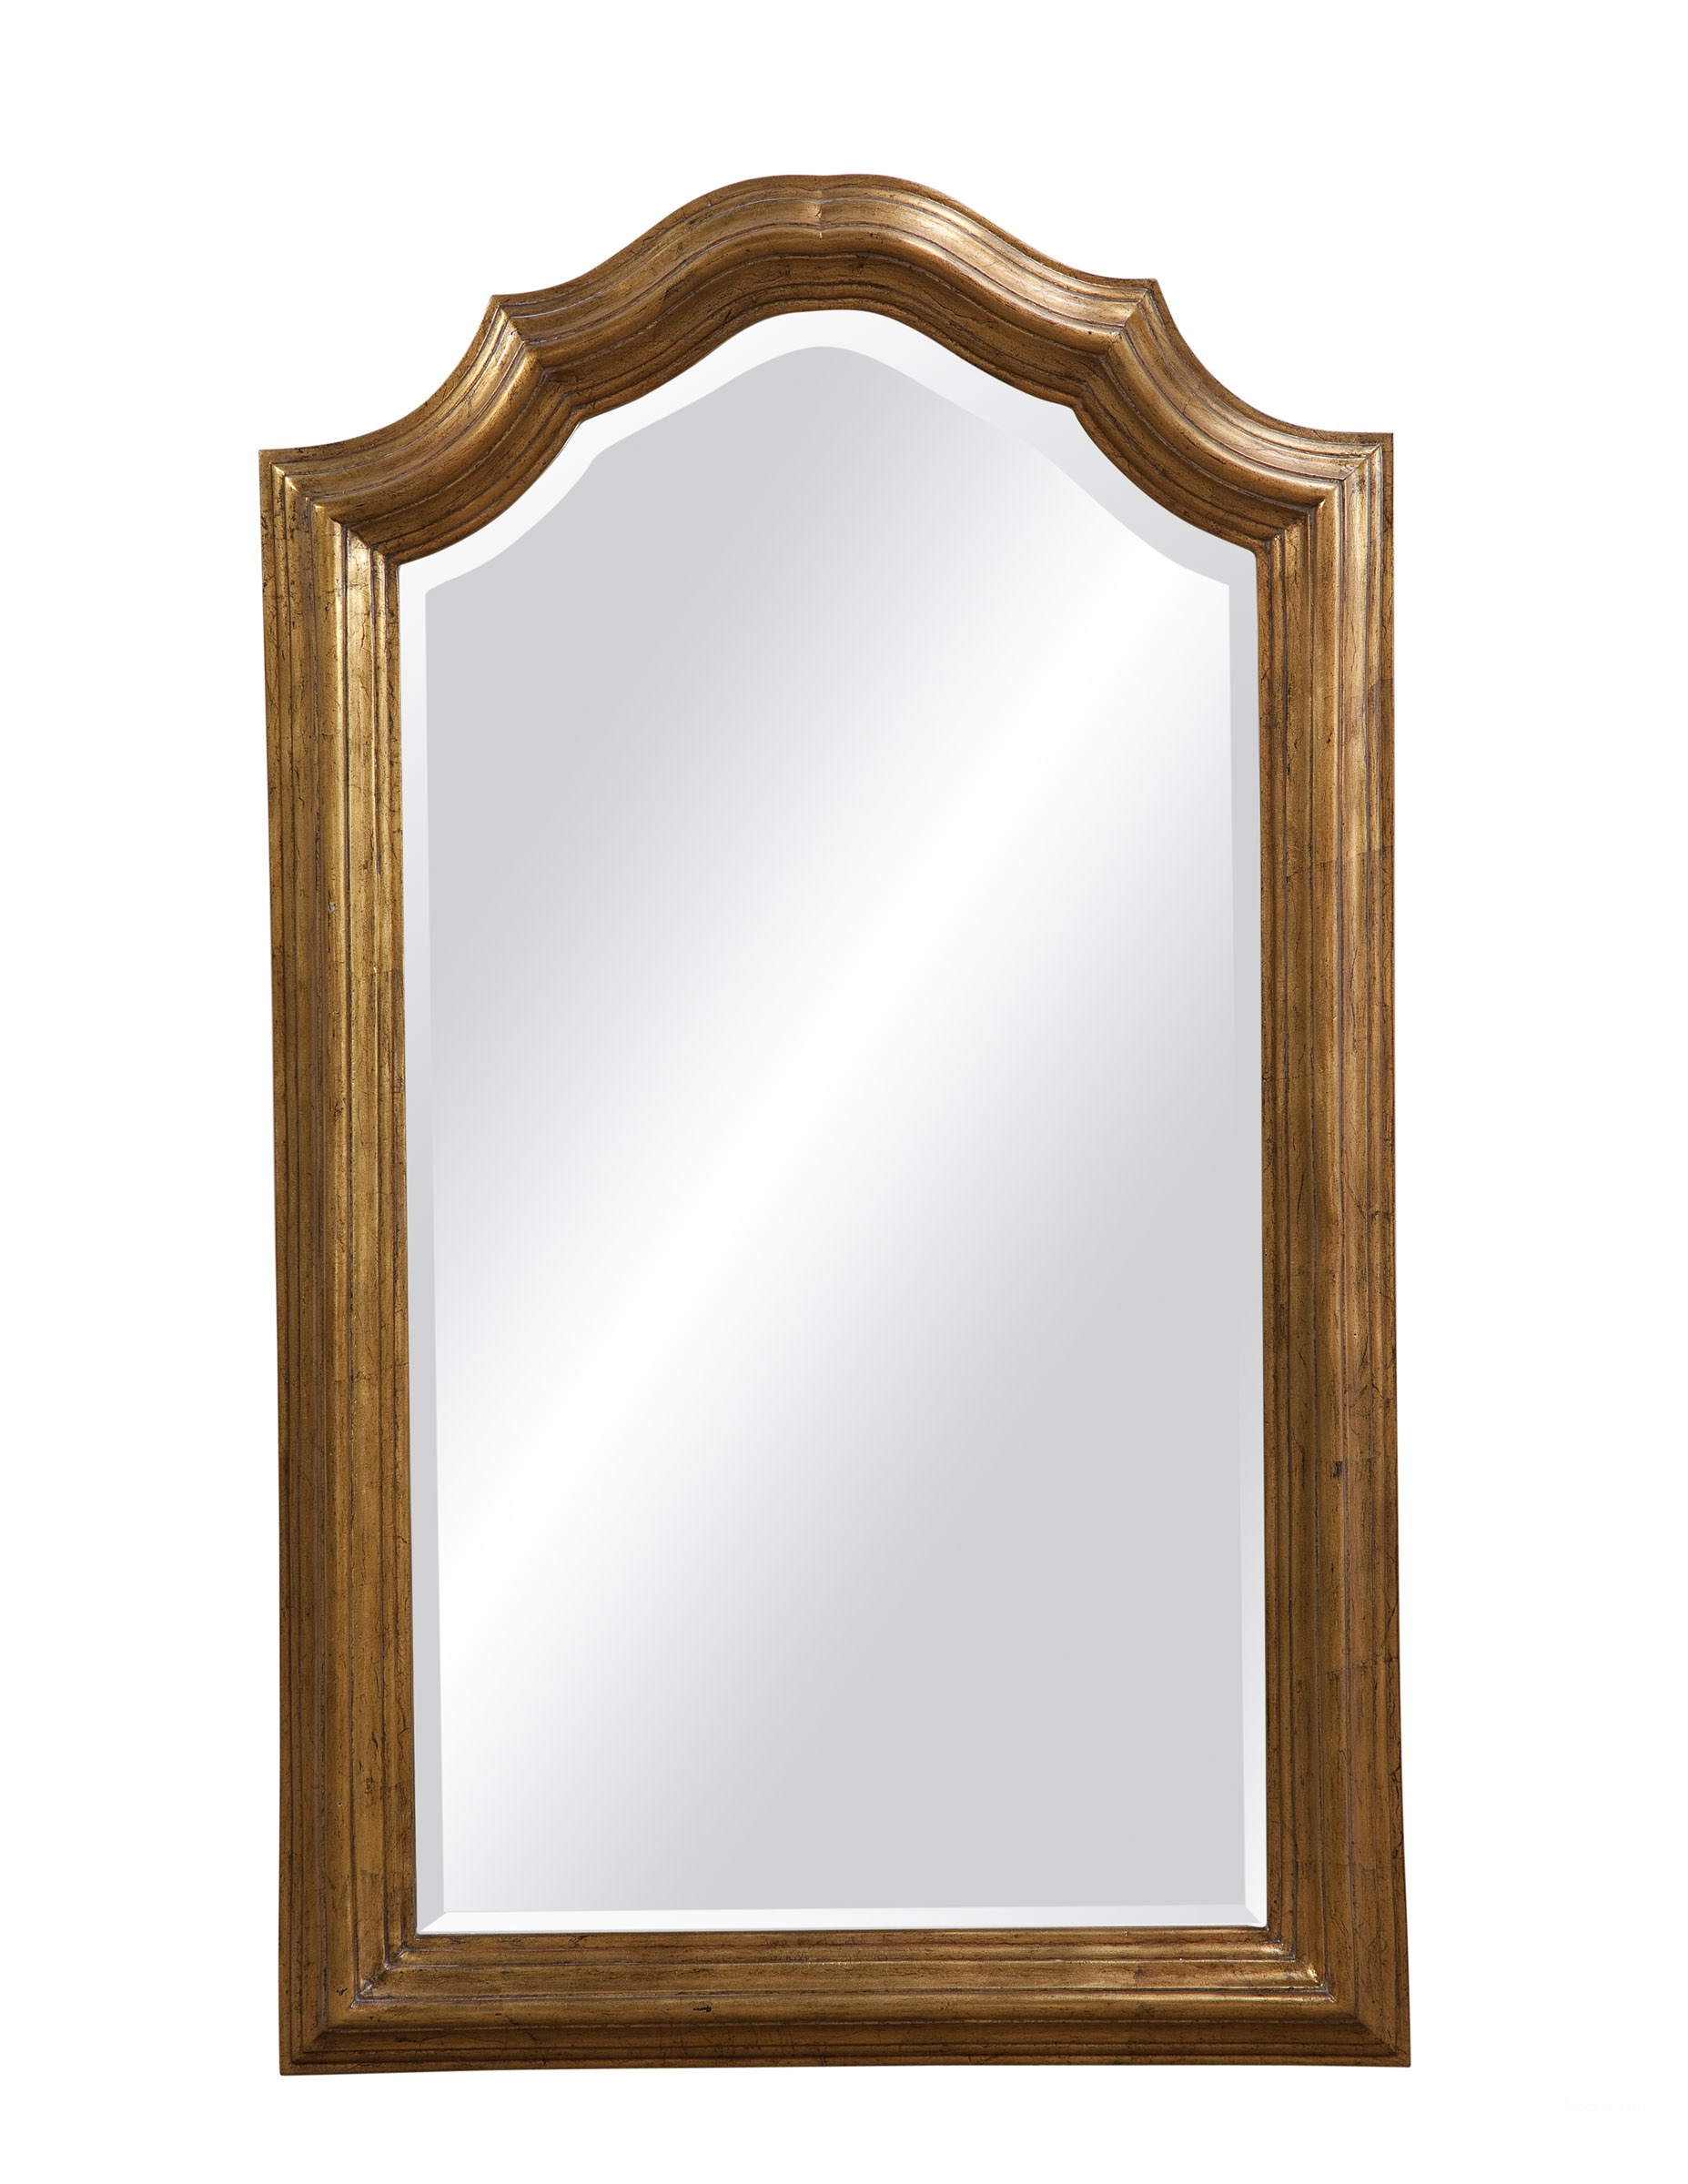 Купить зеркало настенное в спб. Зеркало настенное в деревянной раме. Зеркало в раме для прихожей. Настенные зеркала небольшие. Зеркало в деревянной раме для прихожей.